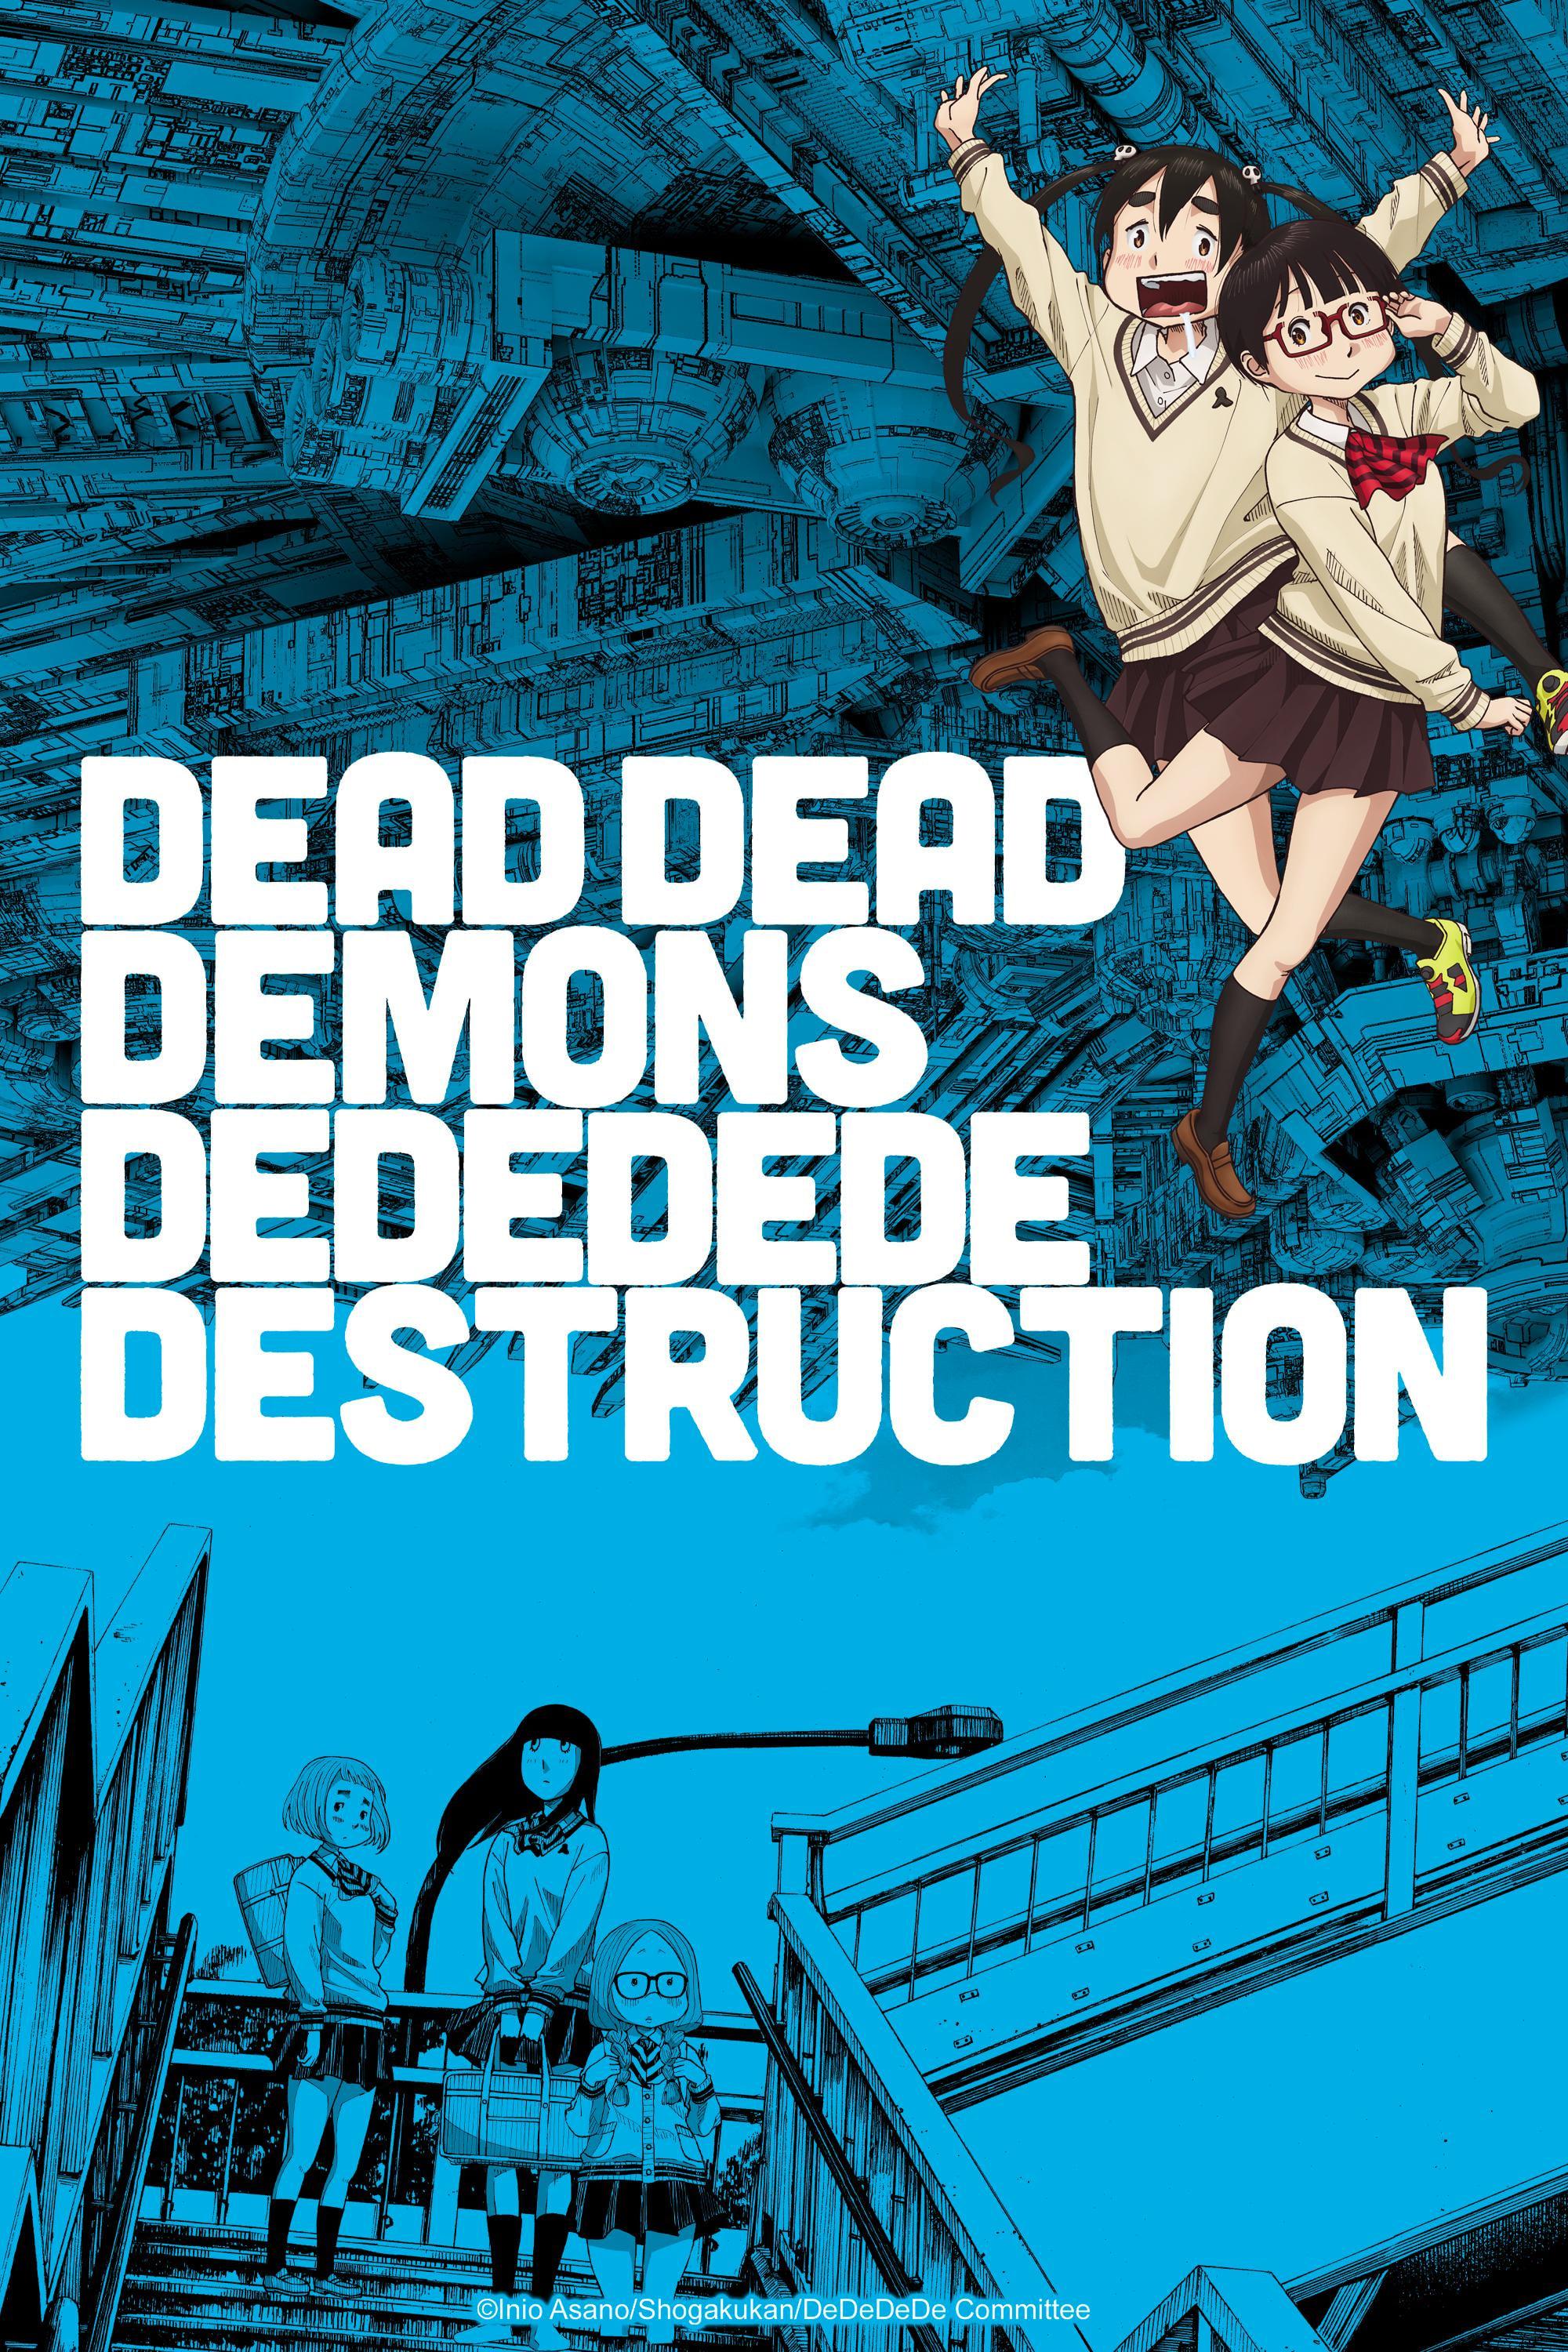 DEAD DEAD DEMONS DEDEDEDE DESTRUCTION poster